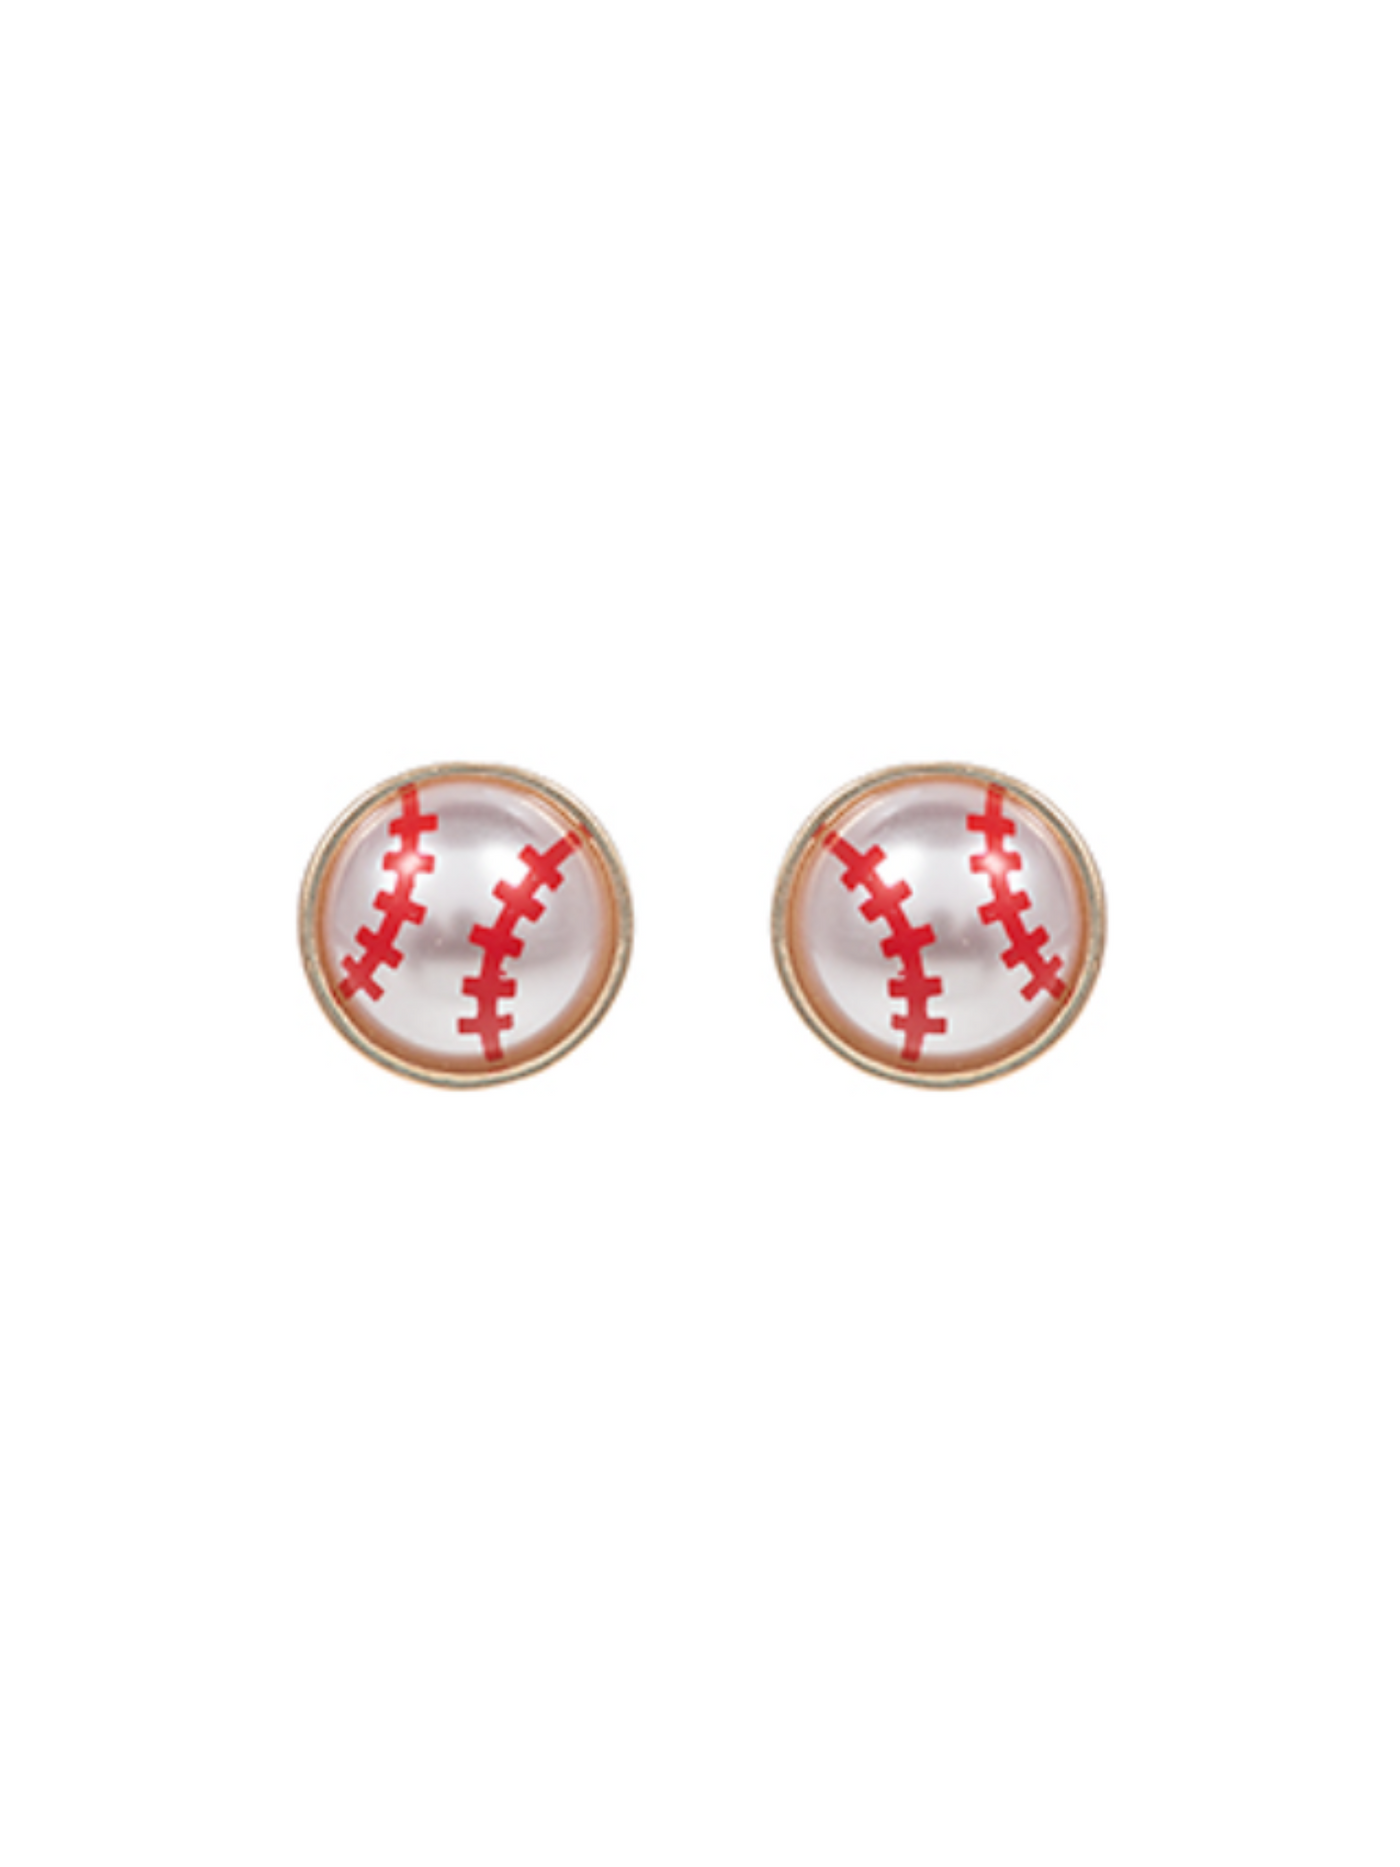 Baseball Stud Earrings on white background.